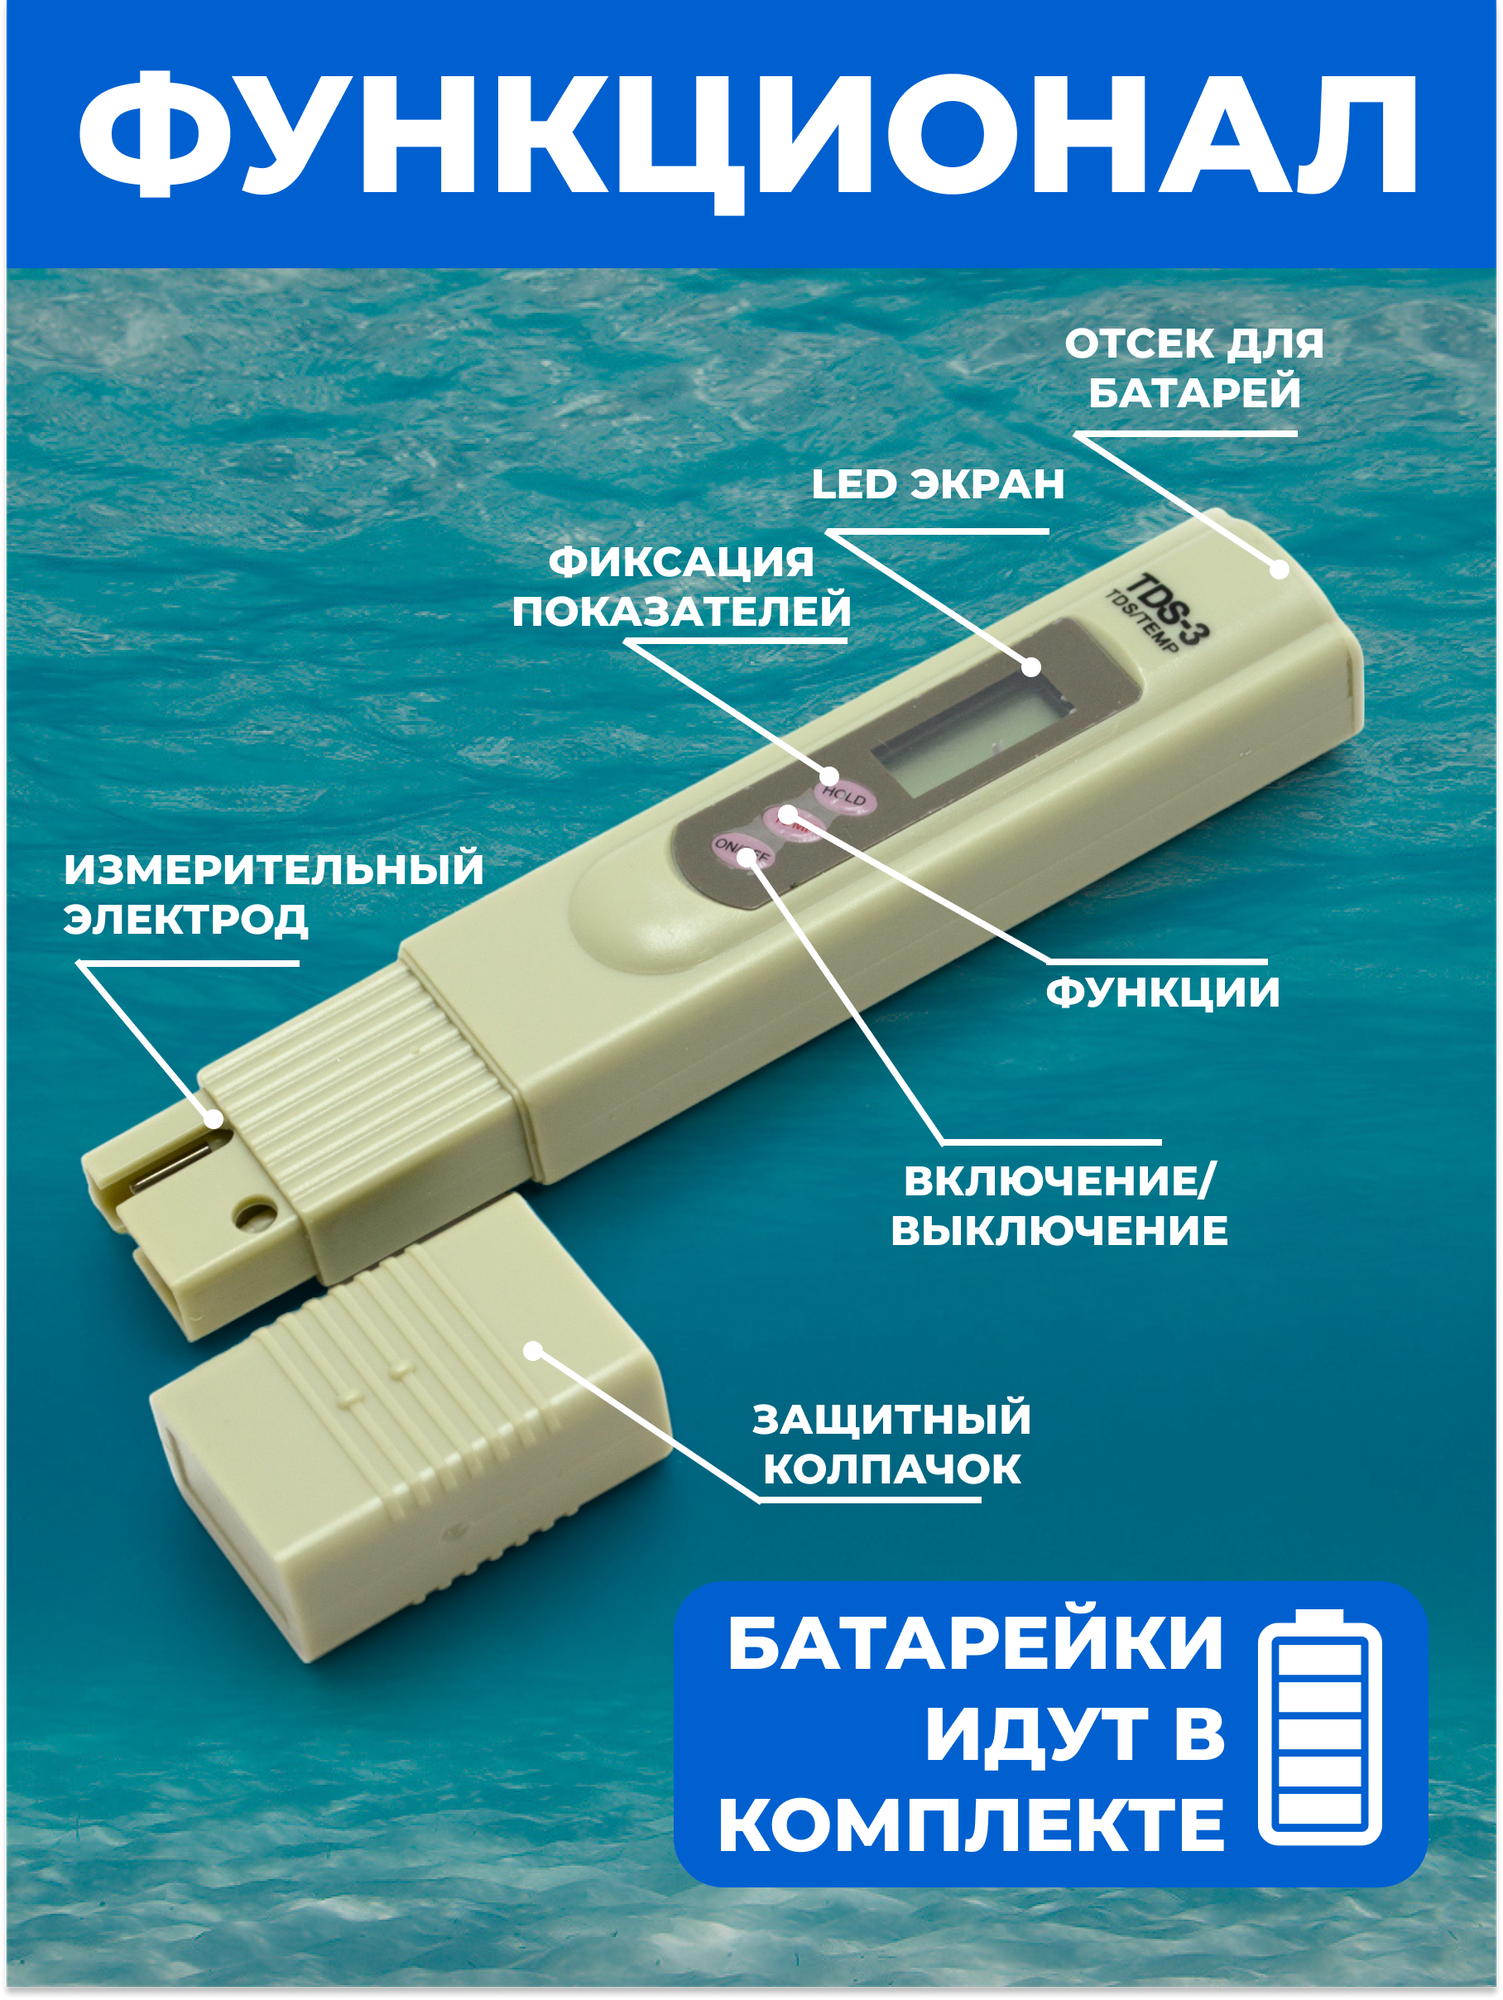 ТДС метр, (солемер), цифровой измеритель жесткости воды TDS-3